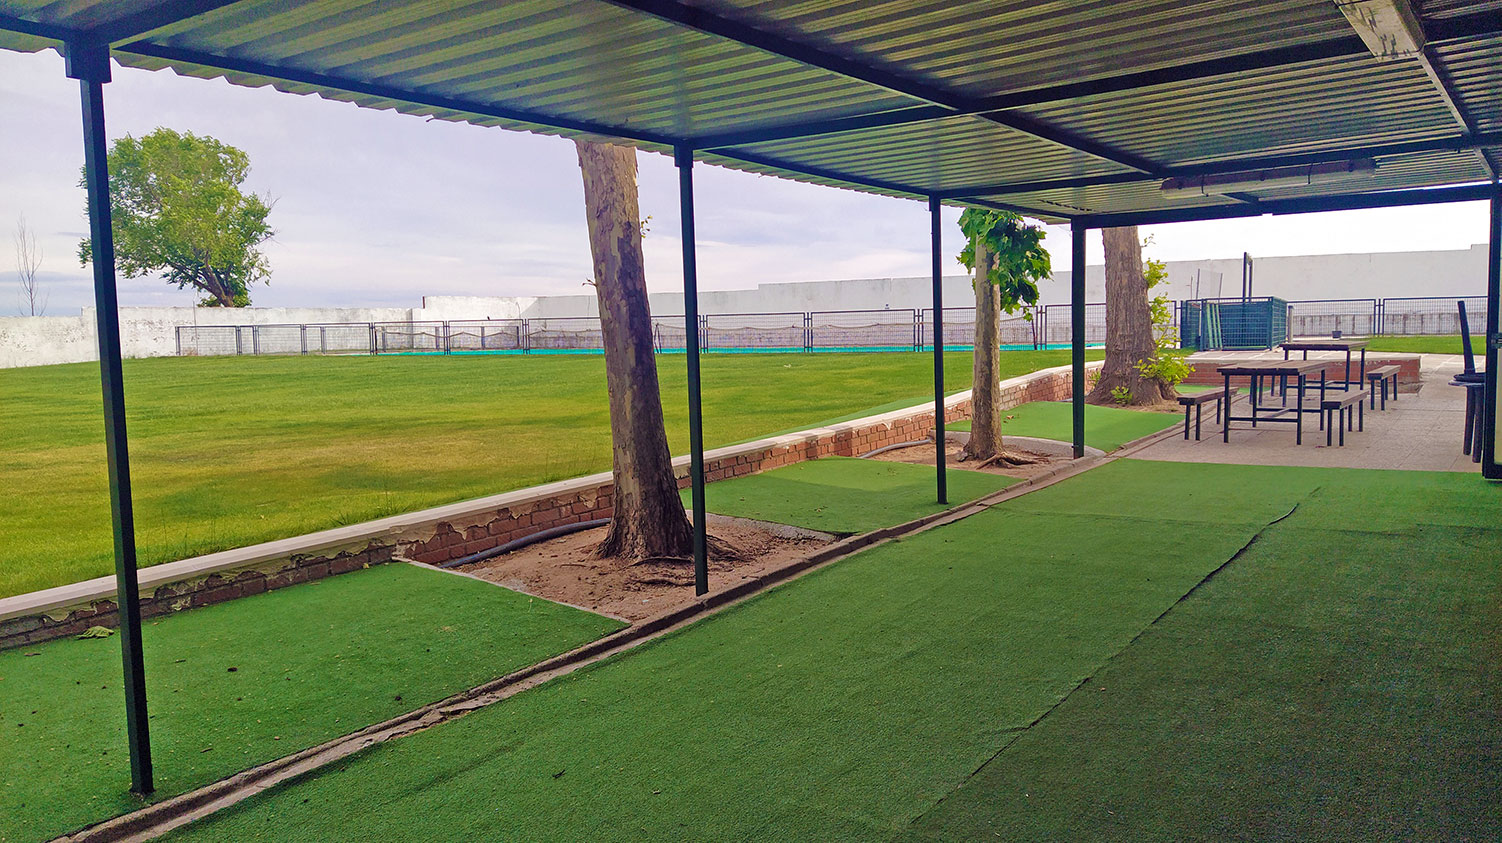 Instalaciones - Complejo Deportivo Municipal - Piscina Municipal - Concejalía de Deportes del Ayuntamiento de Santa Cruz del Retamar